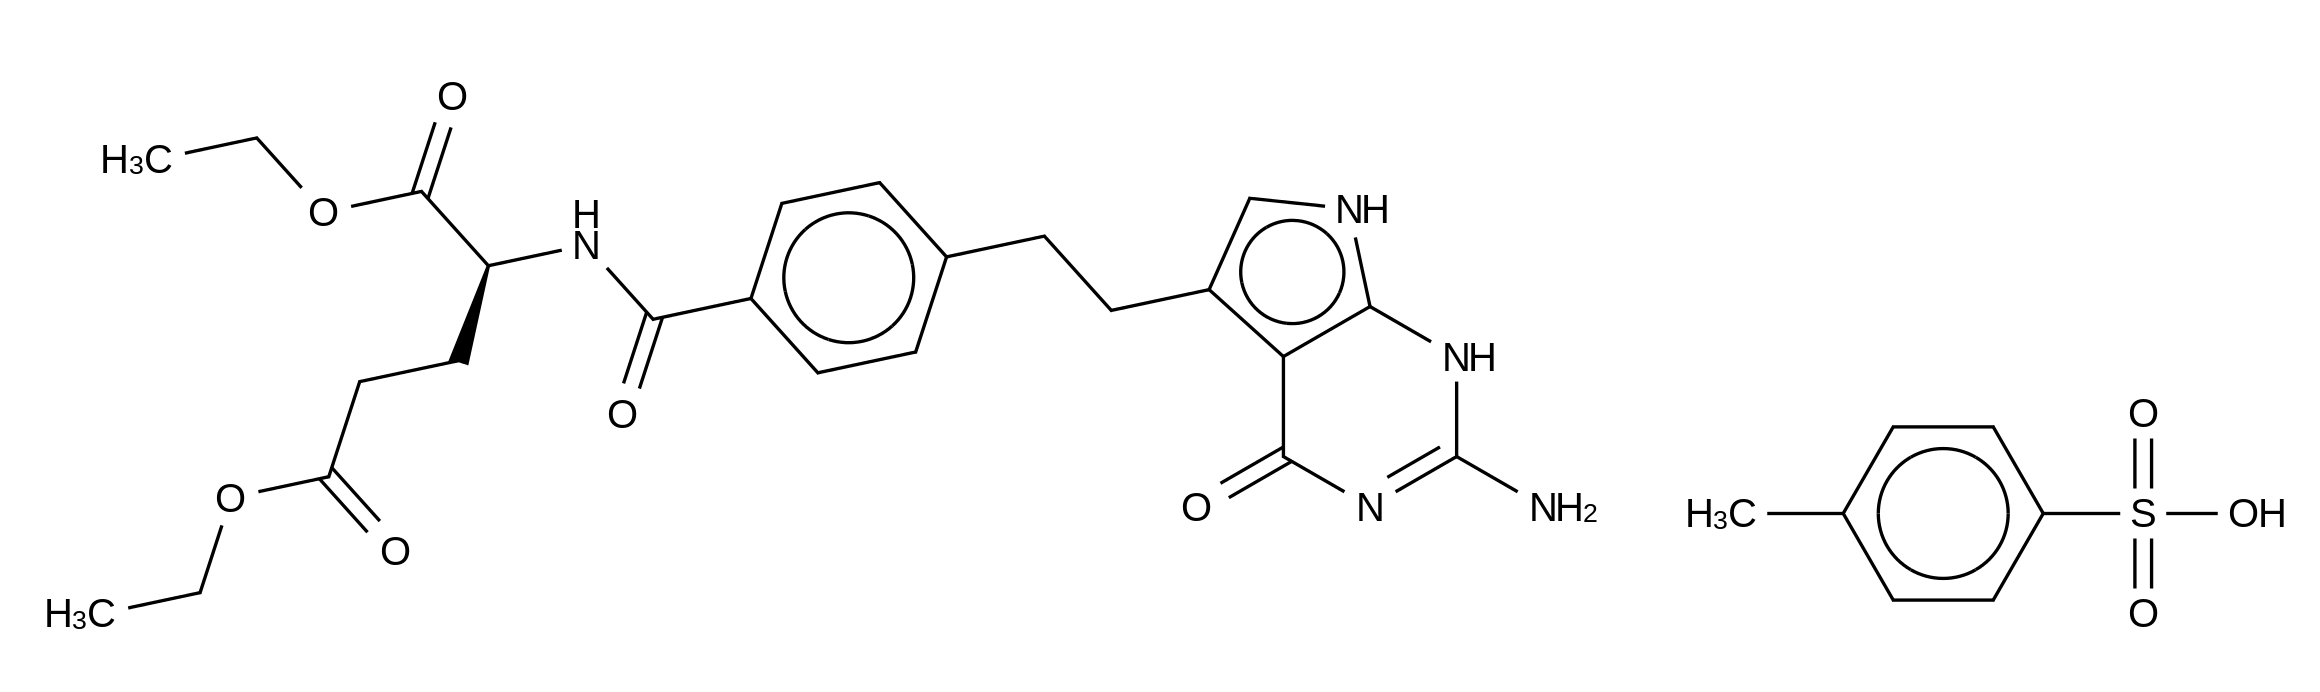 N-[4-[2-(2-Amino-4,7-dihydro-4-oxo-3H-pyrrolo[2,3-d]pyrimidin-5-yl)ethyl]benzoyl]-L-glutamic Acid 1,5-Diethyl Ester 4-Methylbenzenesulfonate